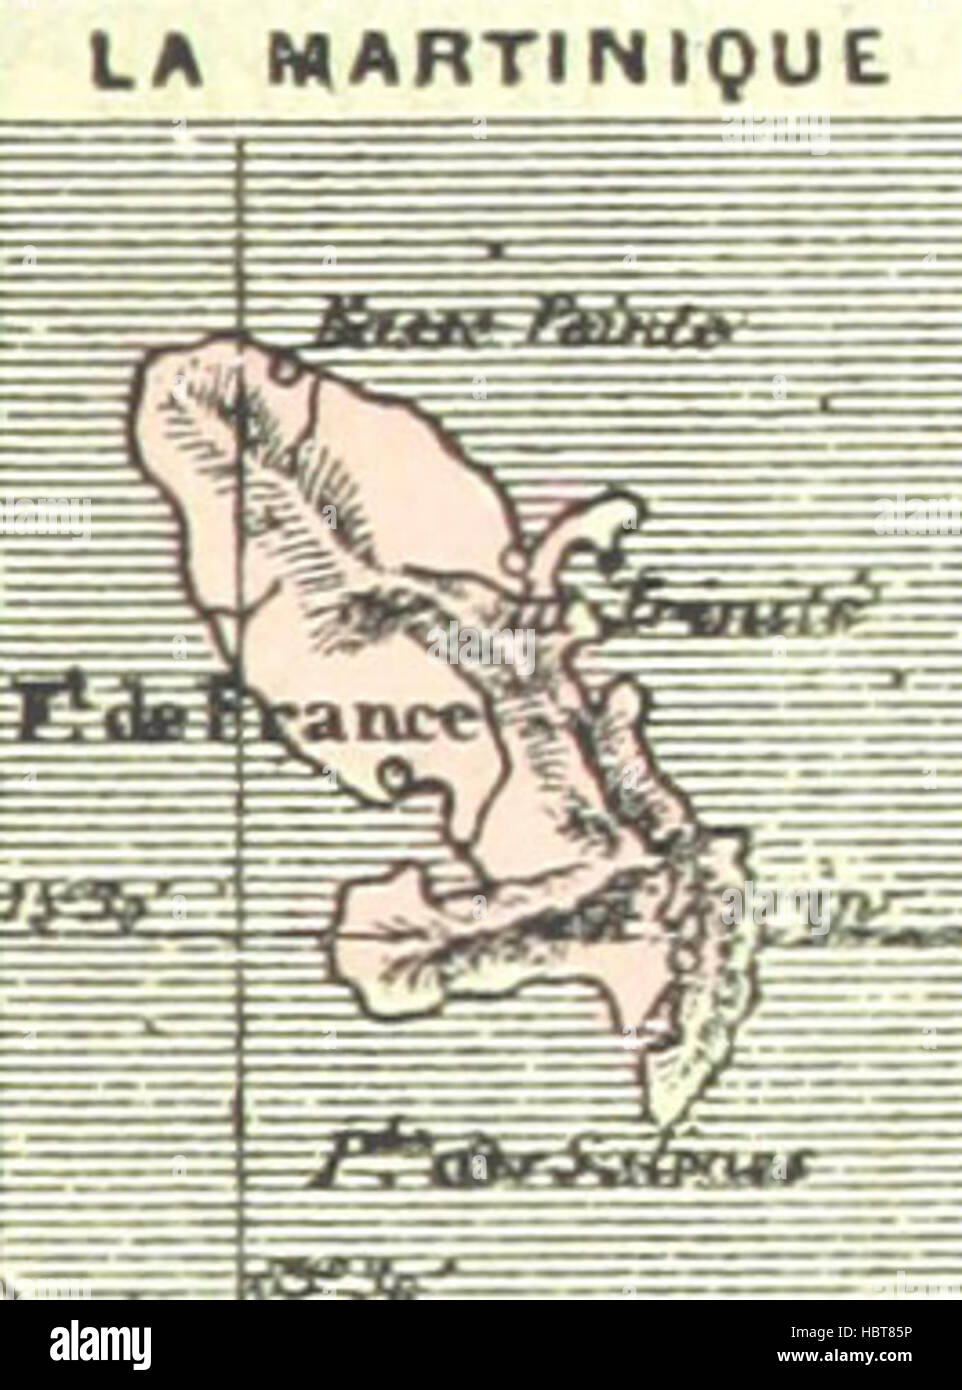 Bild entnommen Seite 765 von "La France Pittoresque, Ou Beschreibung Par Départements De La France et de ses Kolonien Bild entnommen Seite 765 von" La France Pittoresque, Ou Stockfoto